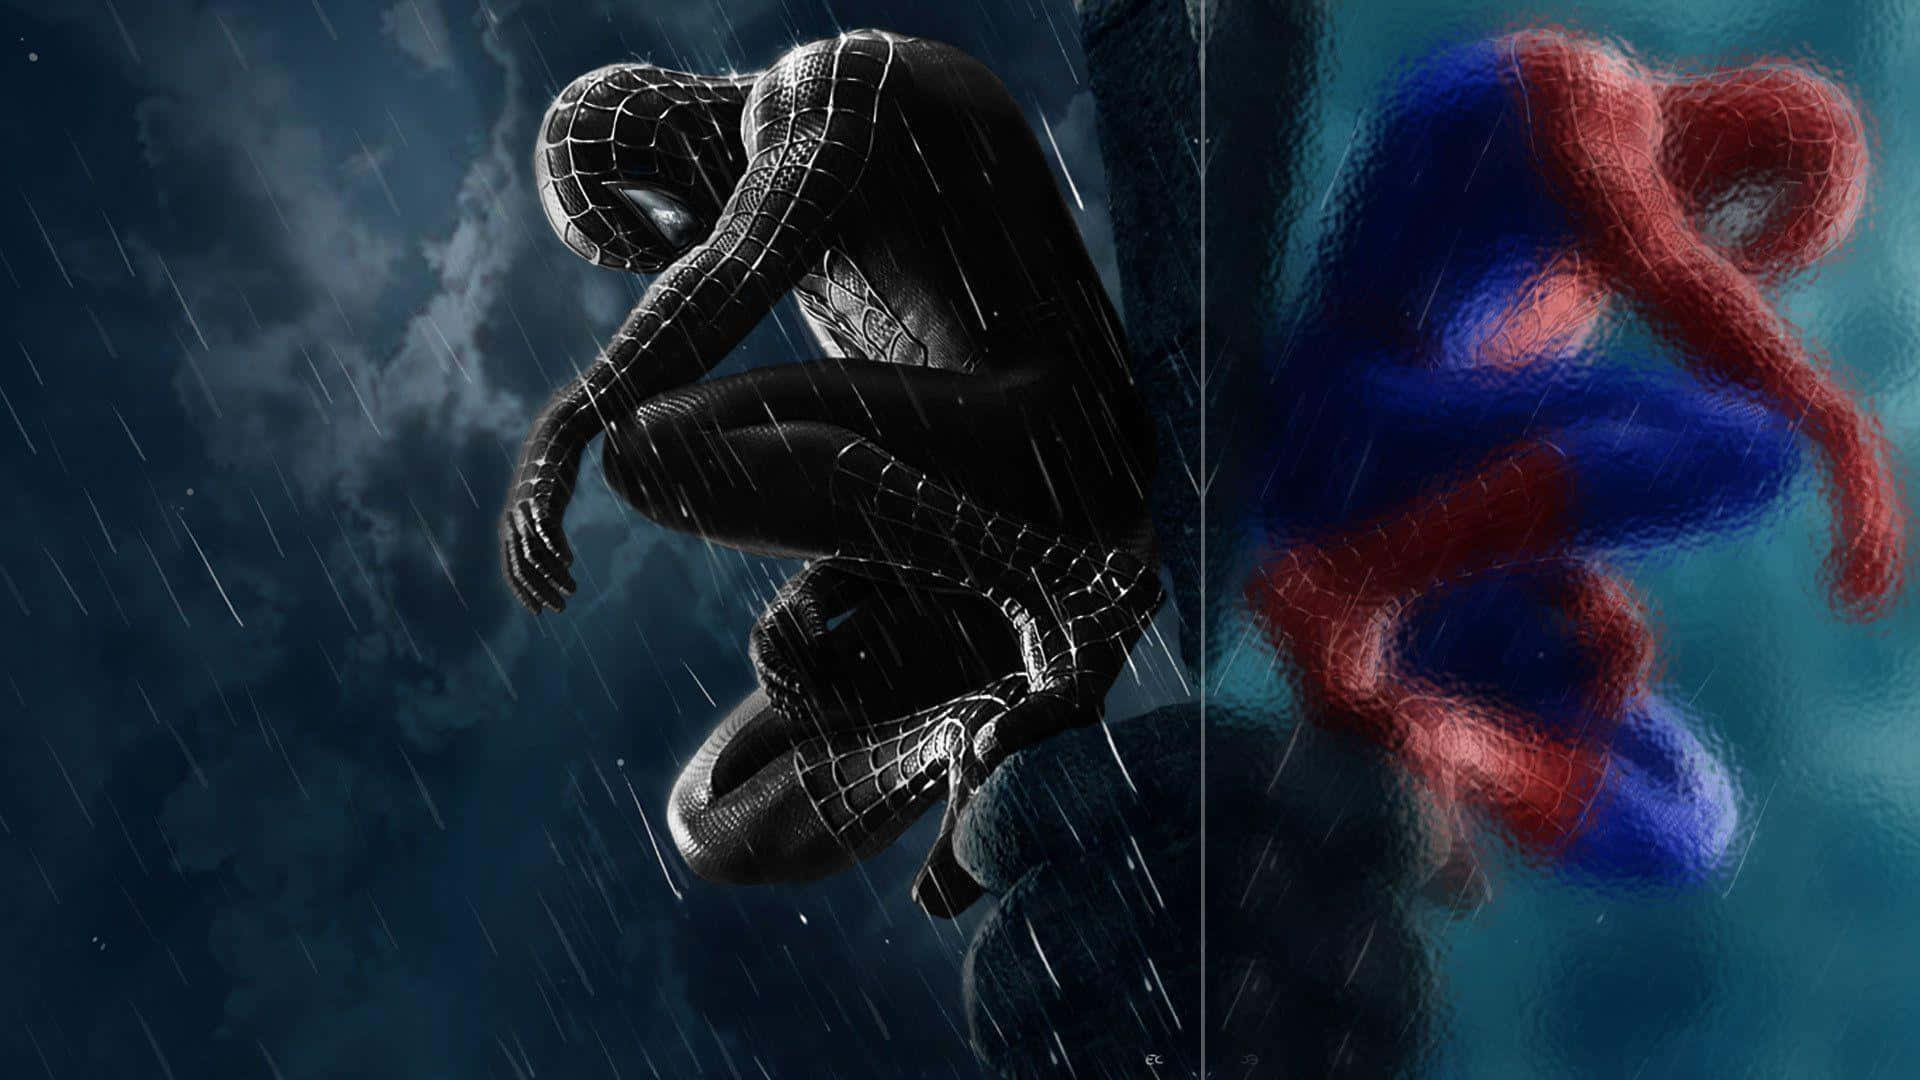 Traurigereflexion Von Spider-man Wallpaper